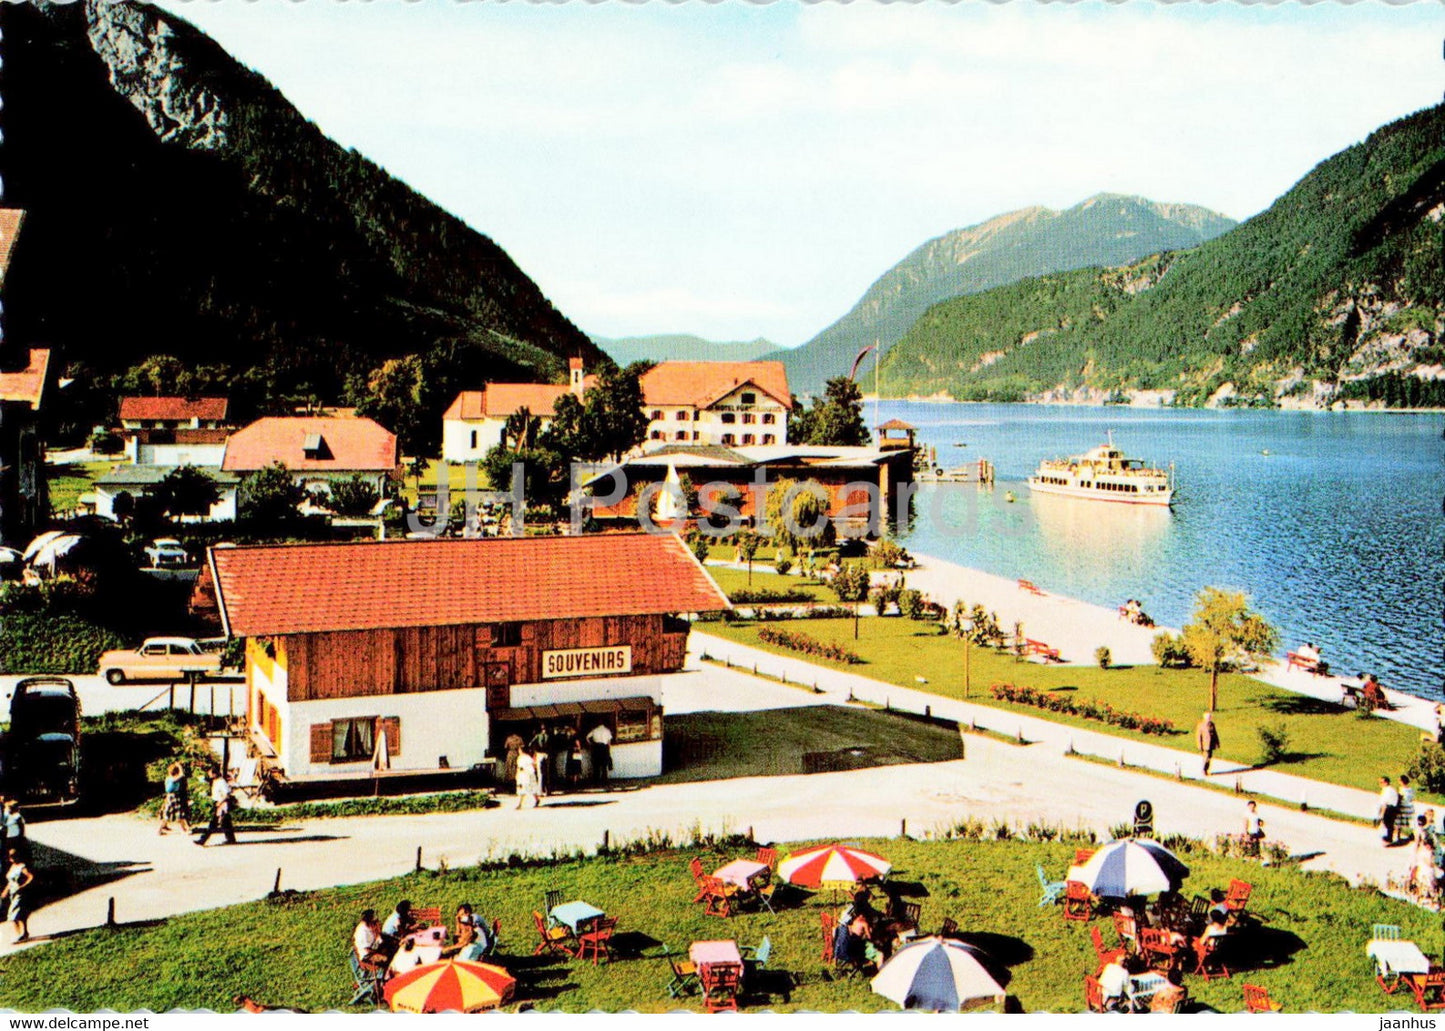 Pertisau am Achensee 950 m - Seeanlagen mit Dampfer St Benedikt gegen Norden Tirol - Tirol - Austria - unused - JH Postcards